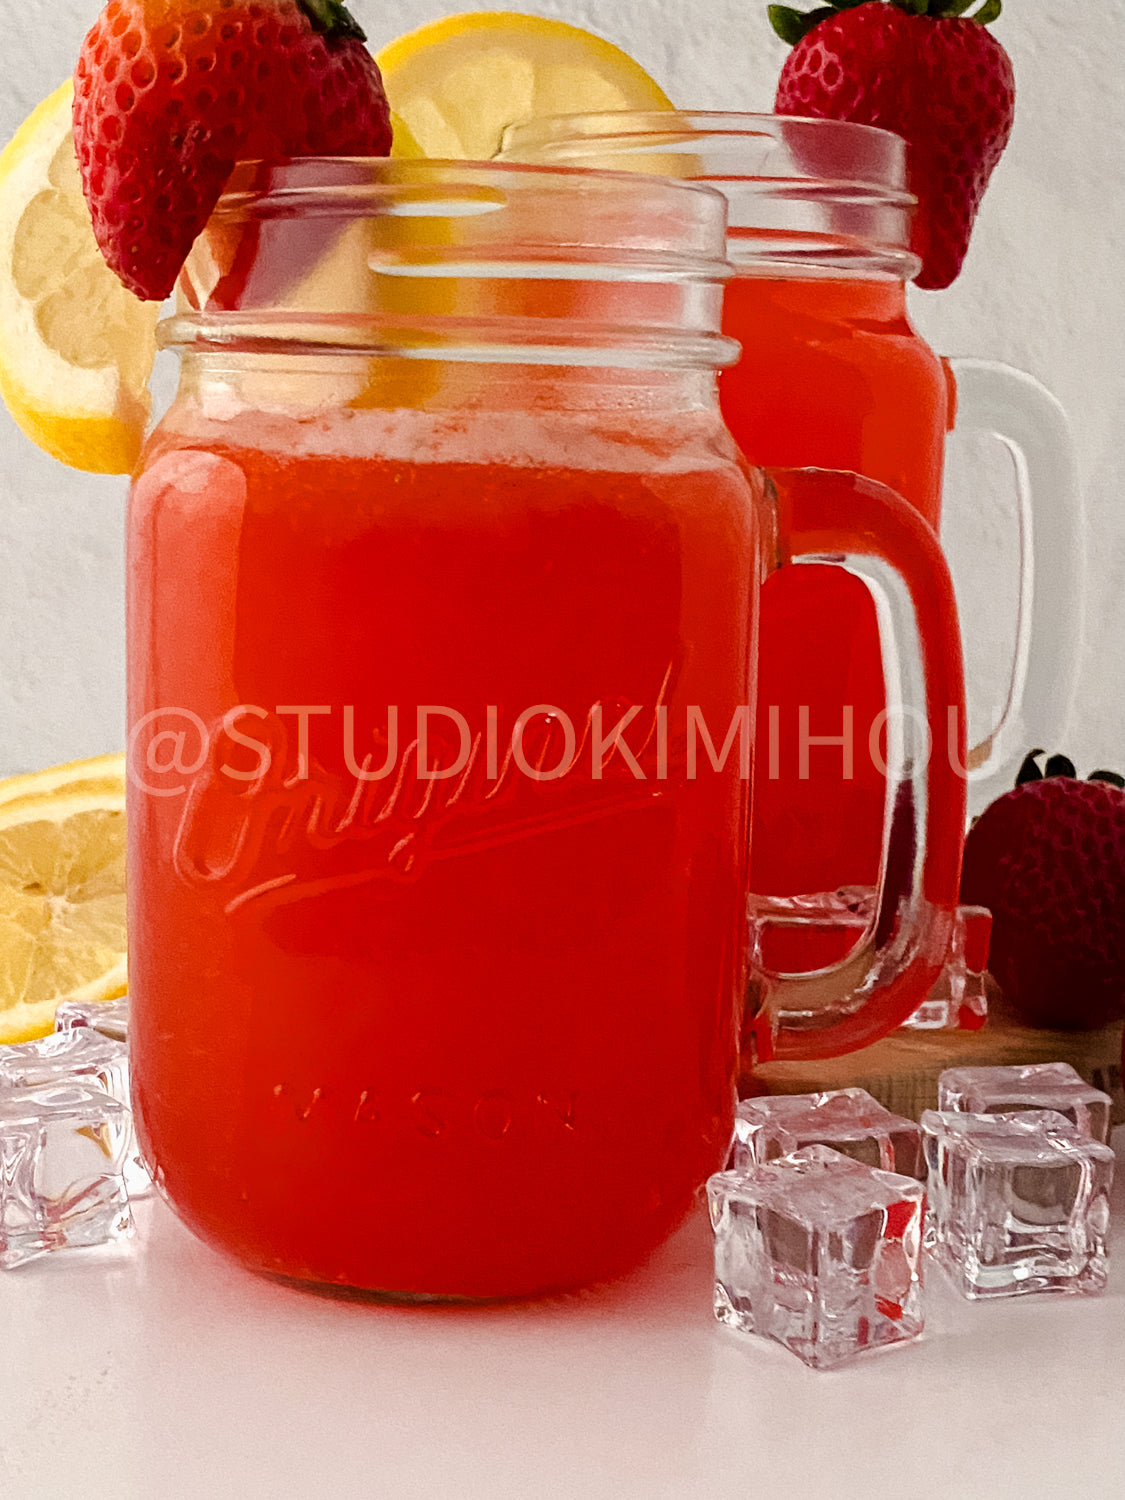 PLR - Strawberry Lemonade